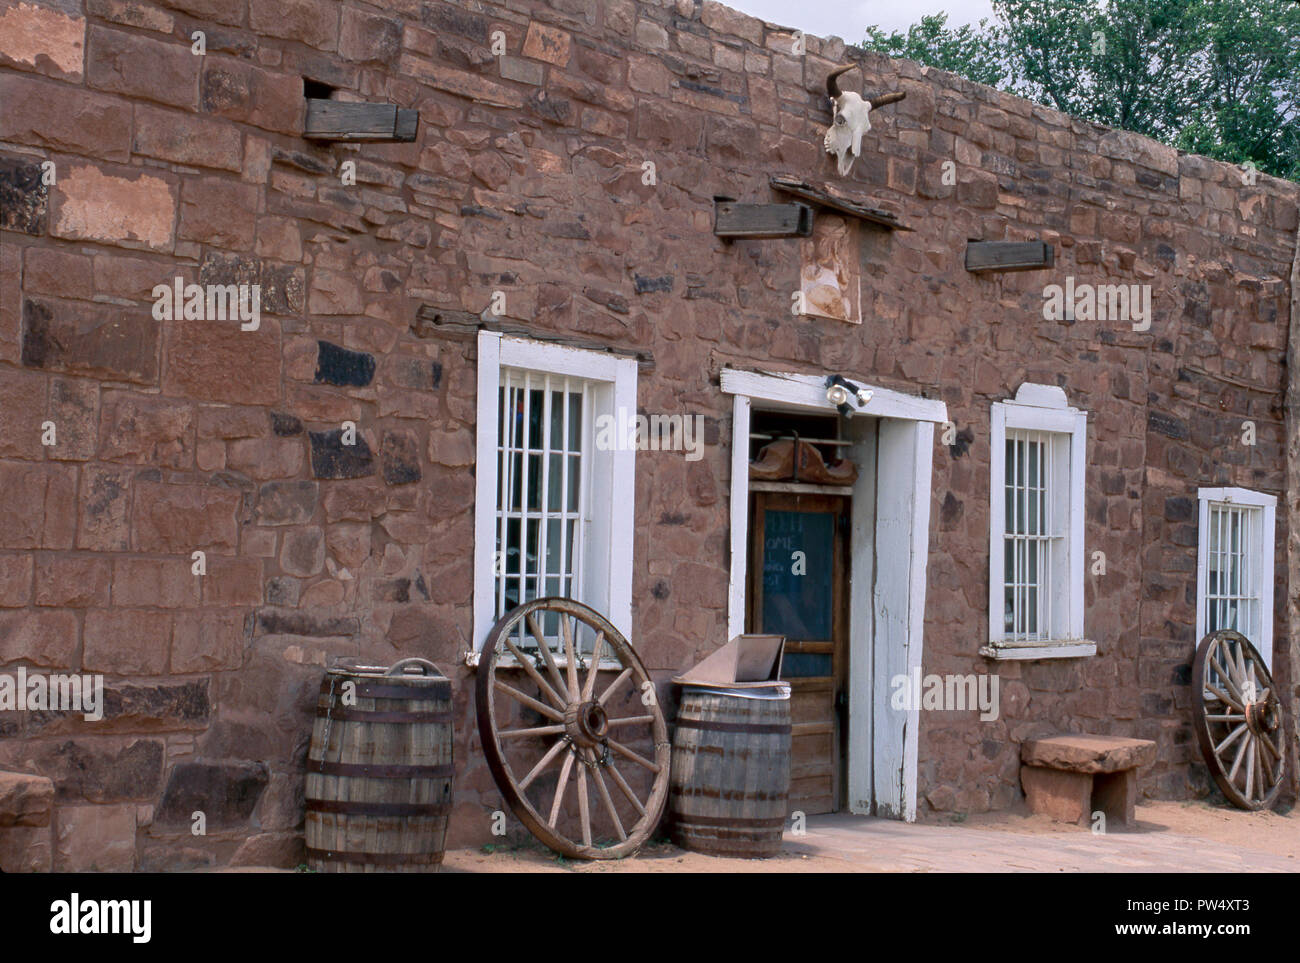 Hubbell Trading Post Lieu Historique National, Réserve de la Nation Navajo, Arizona. Photographie Banque D'Images